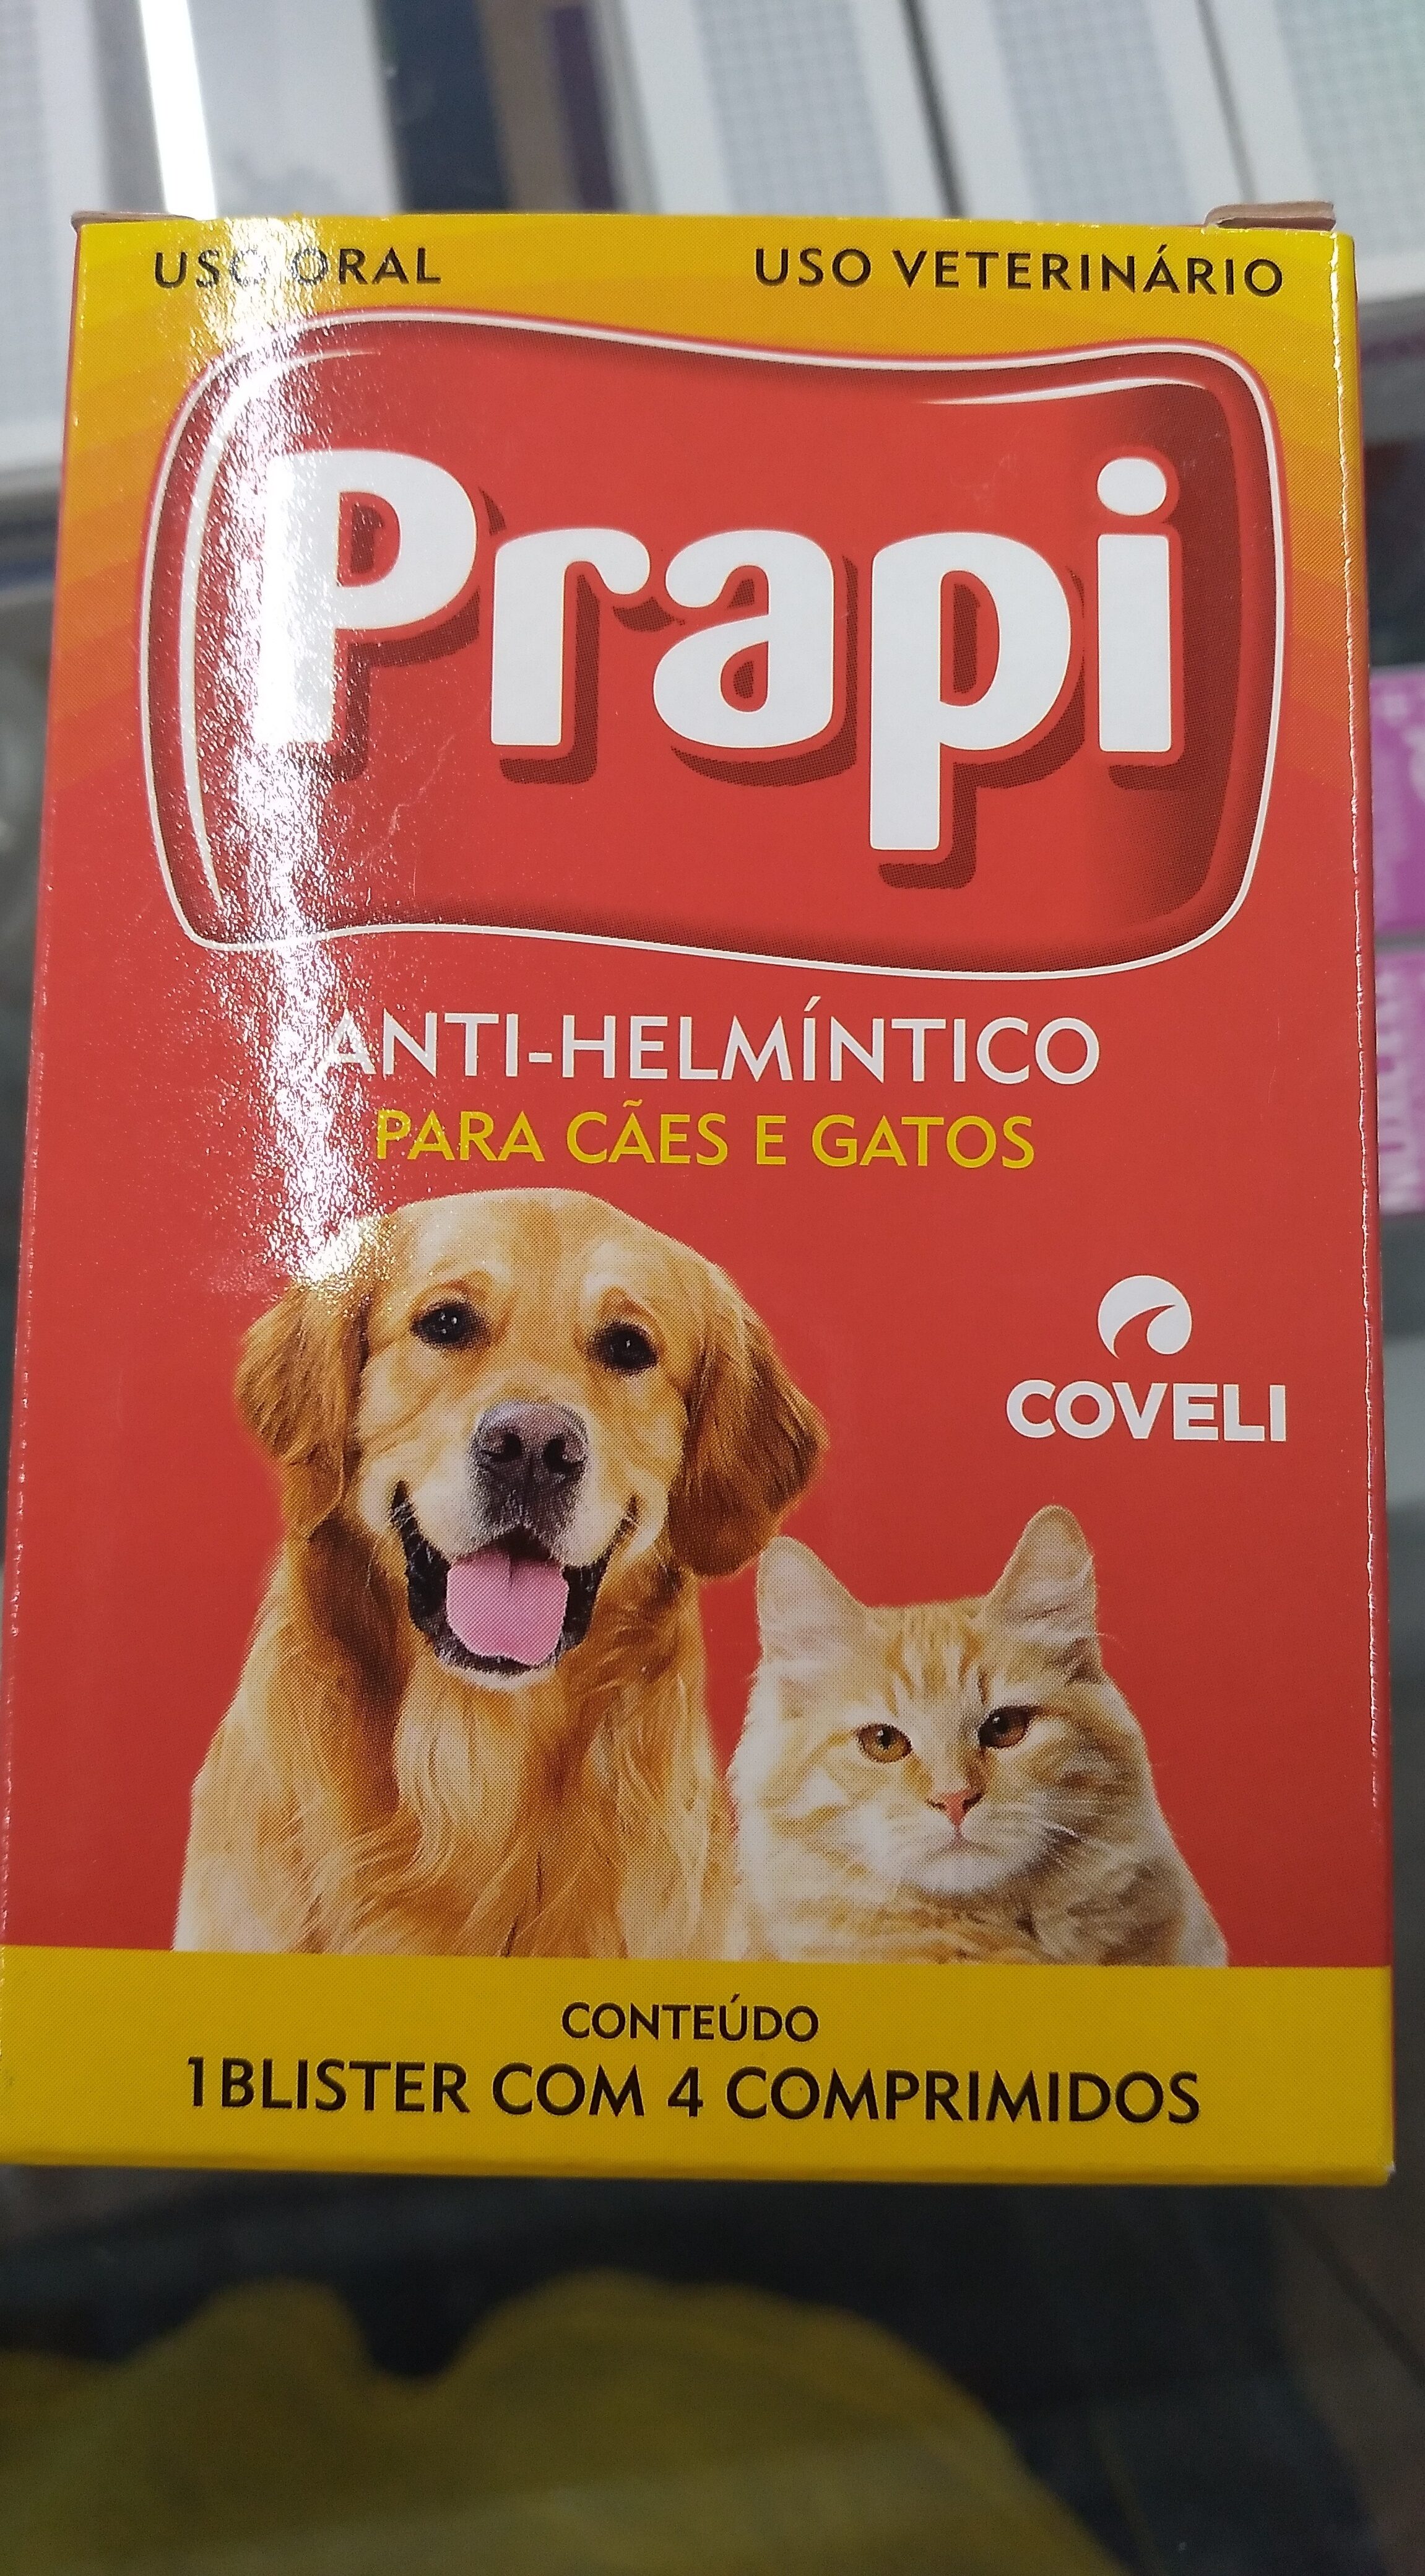 Med. Prapi 4 comp - Product - pt